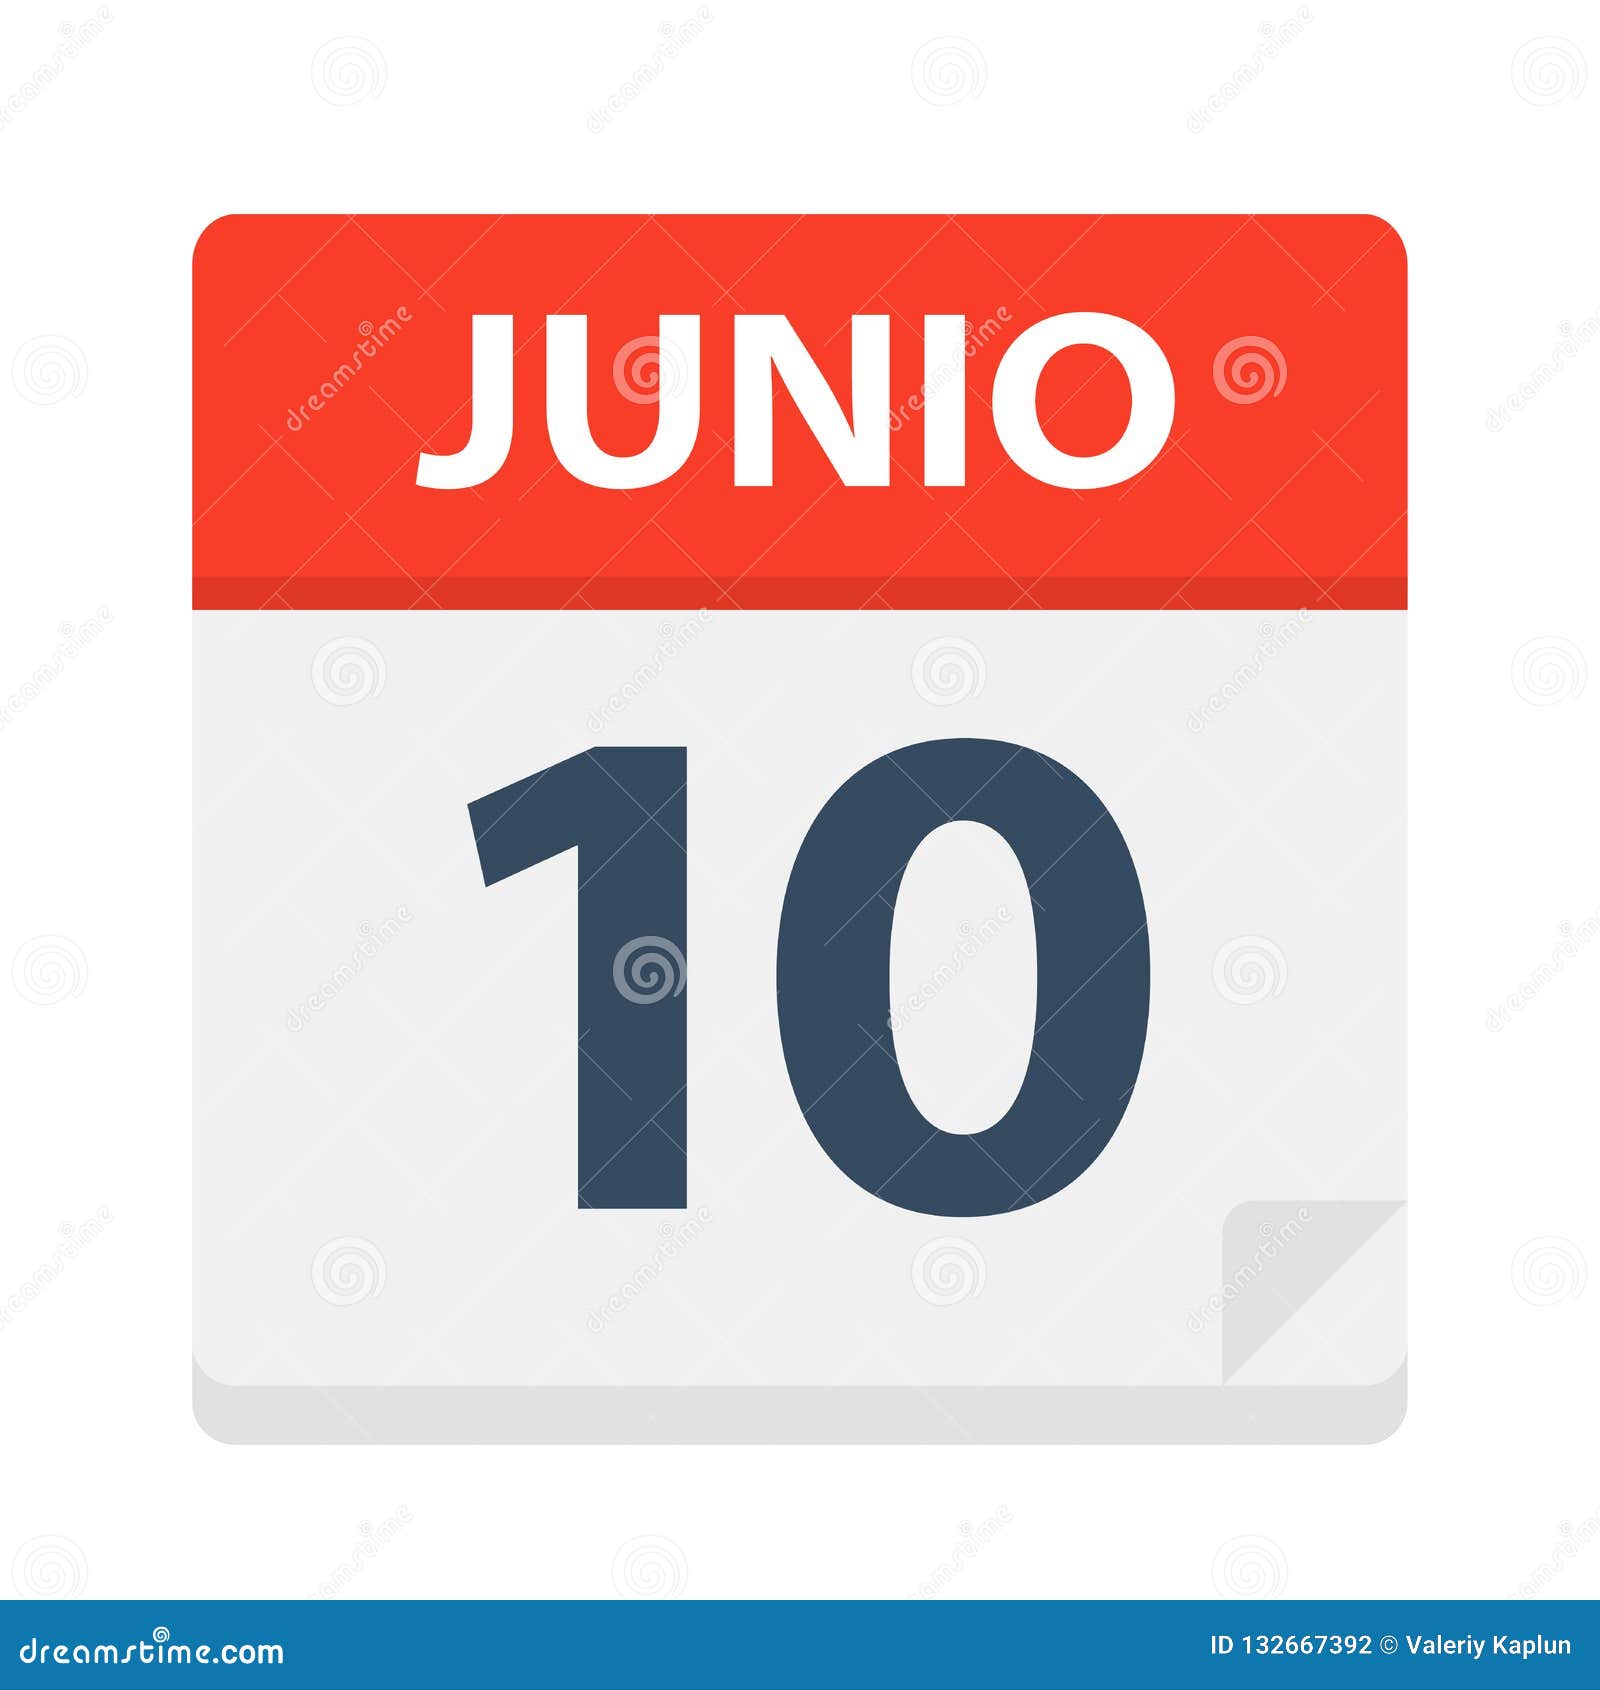 junio 10 - calendar icon - june 10.   of spanish calendar leaf